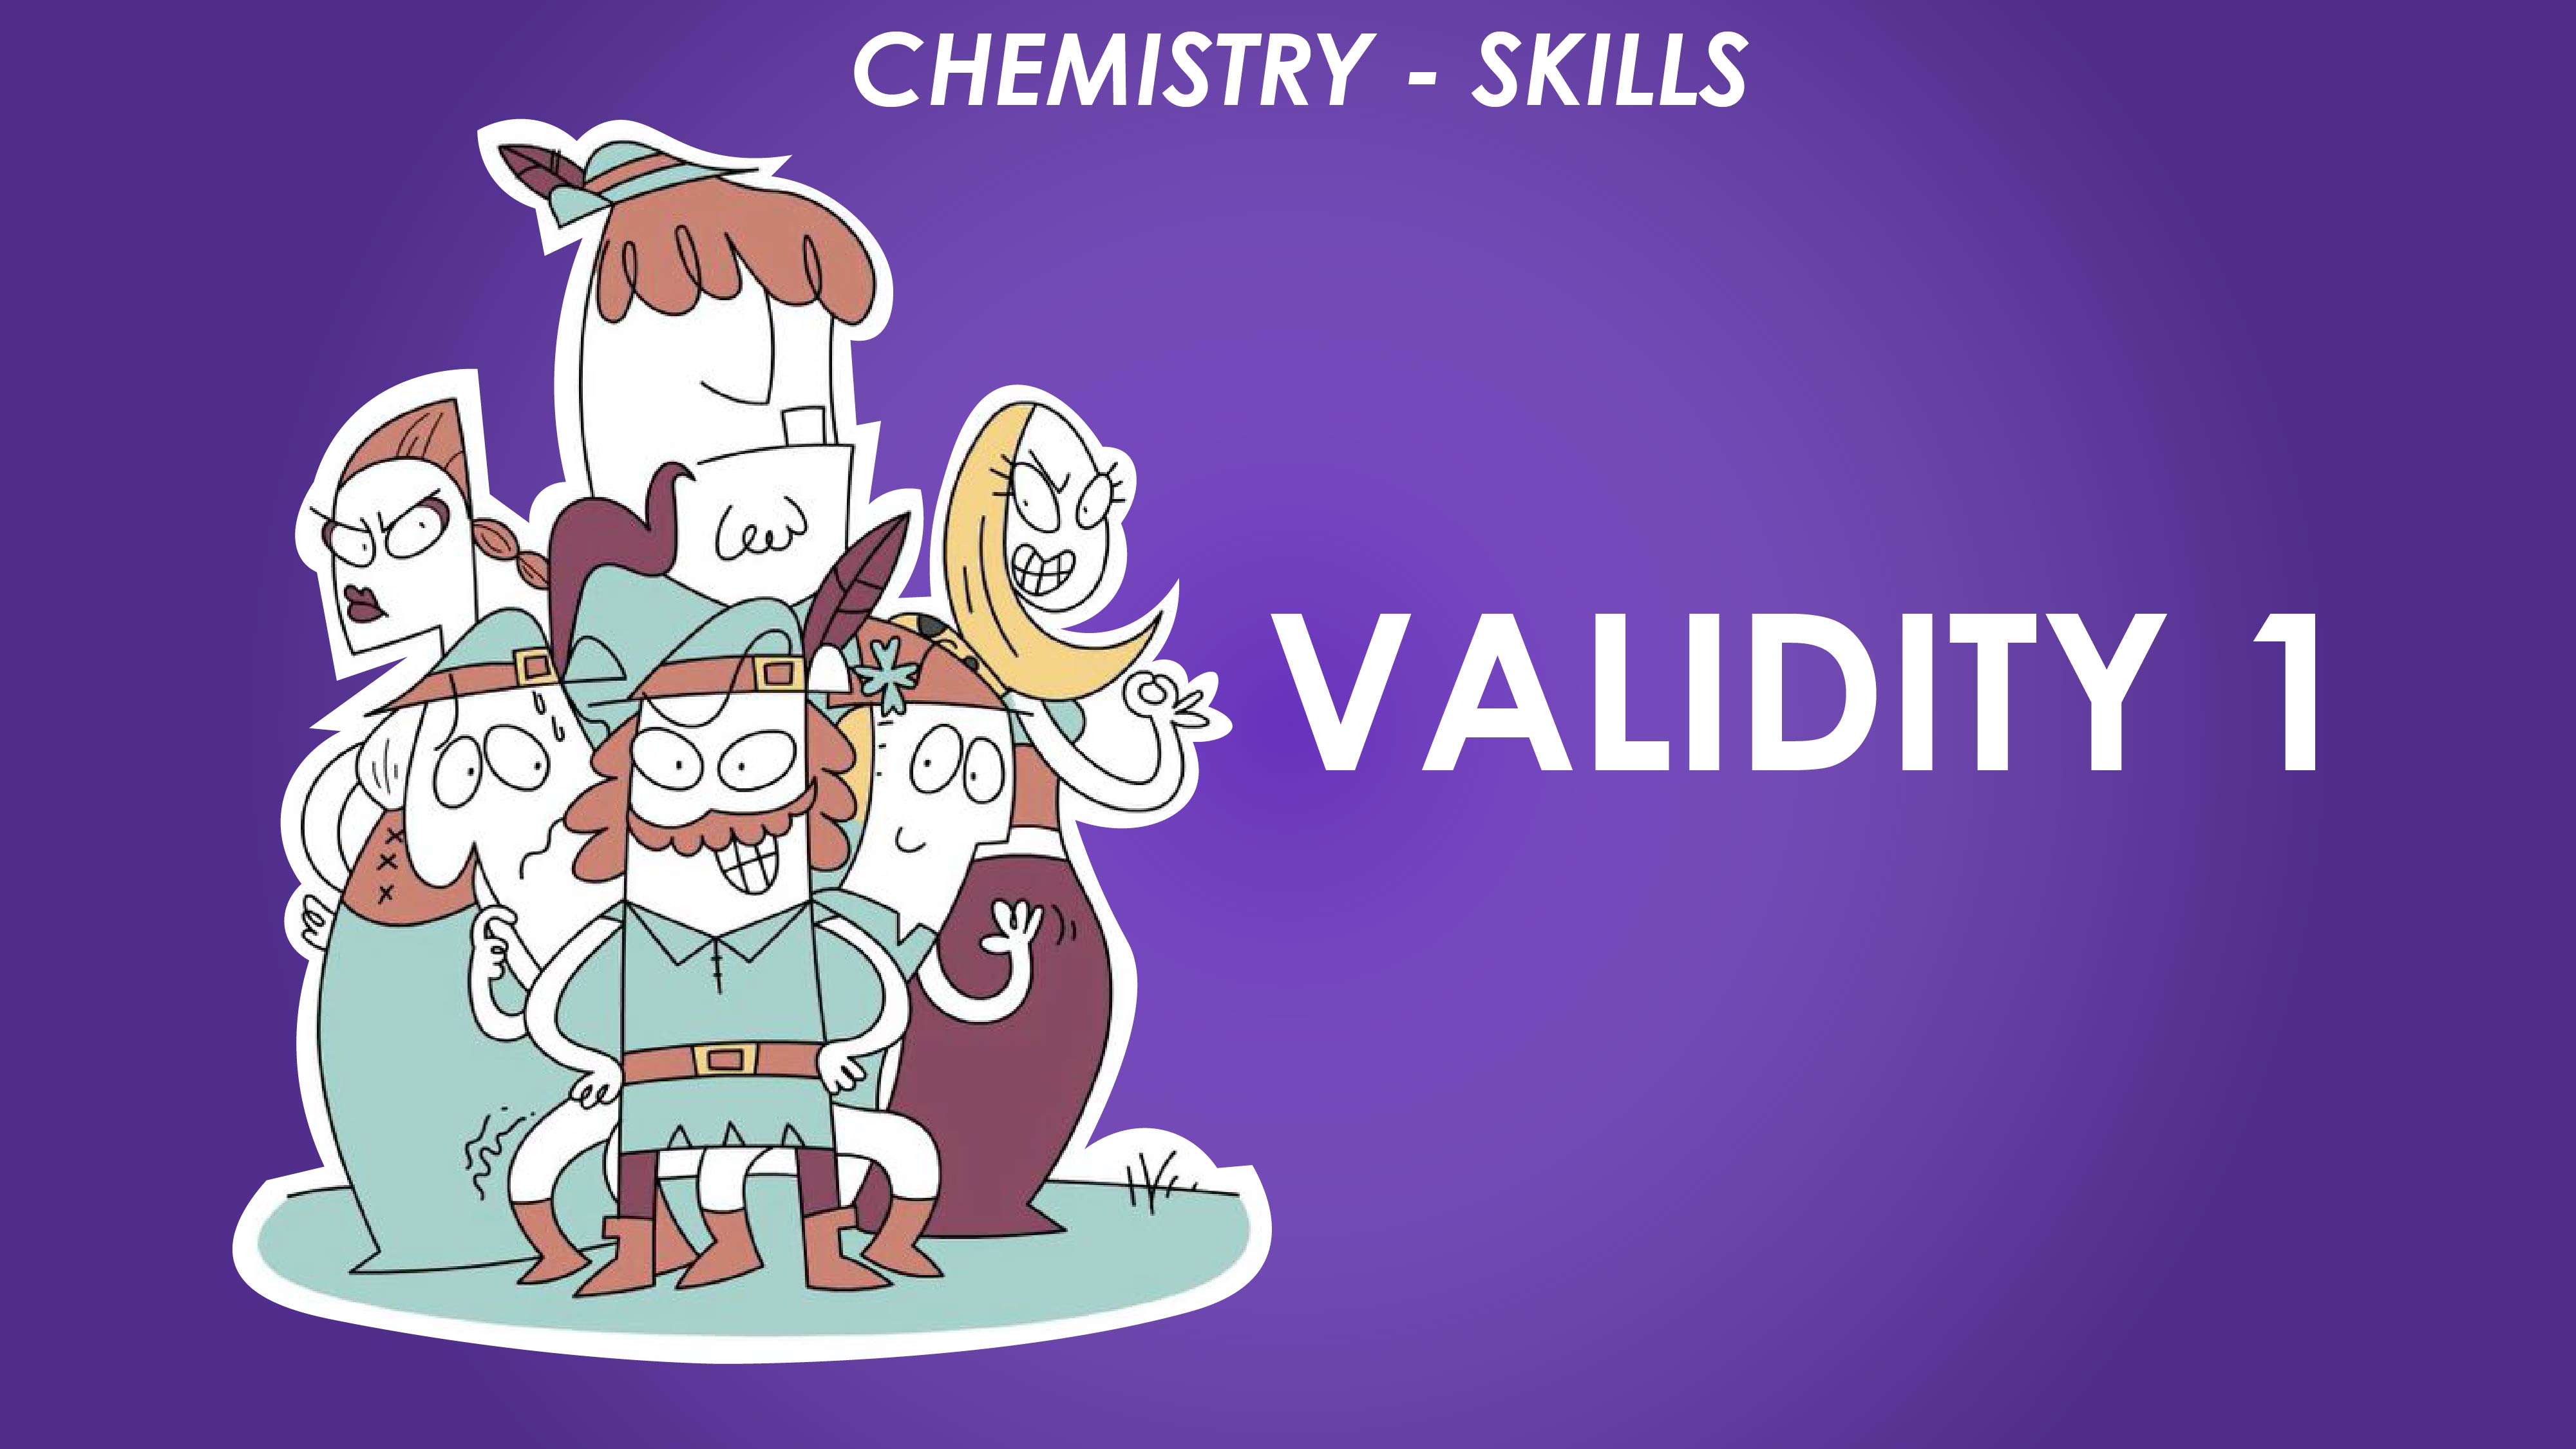 Validity 1 - Chemistry Skills